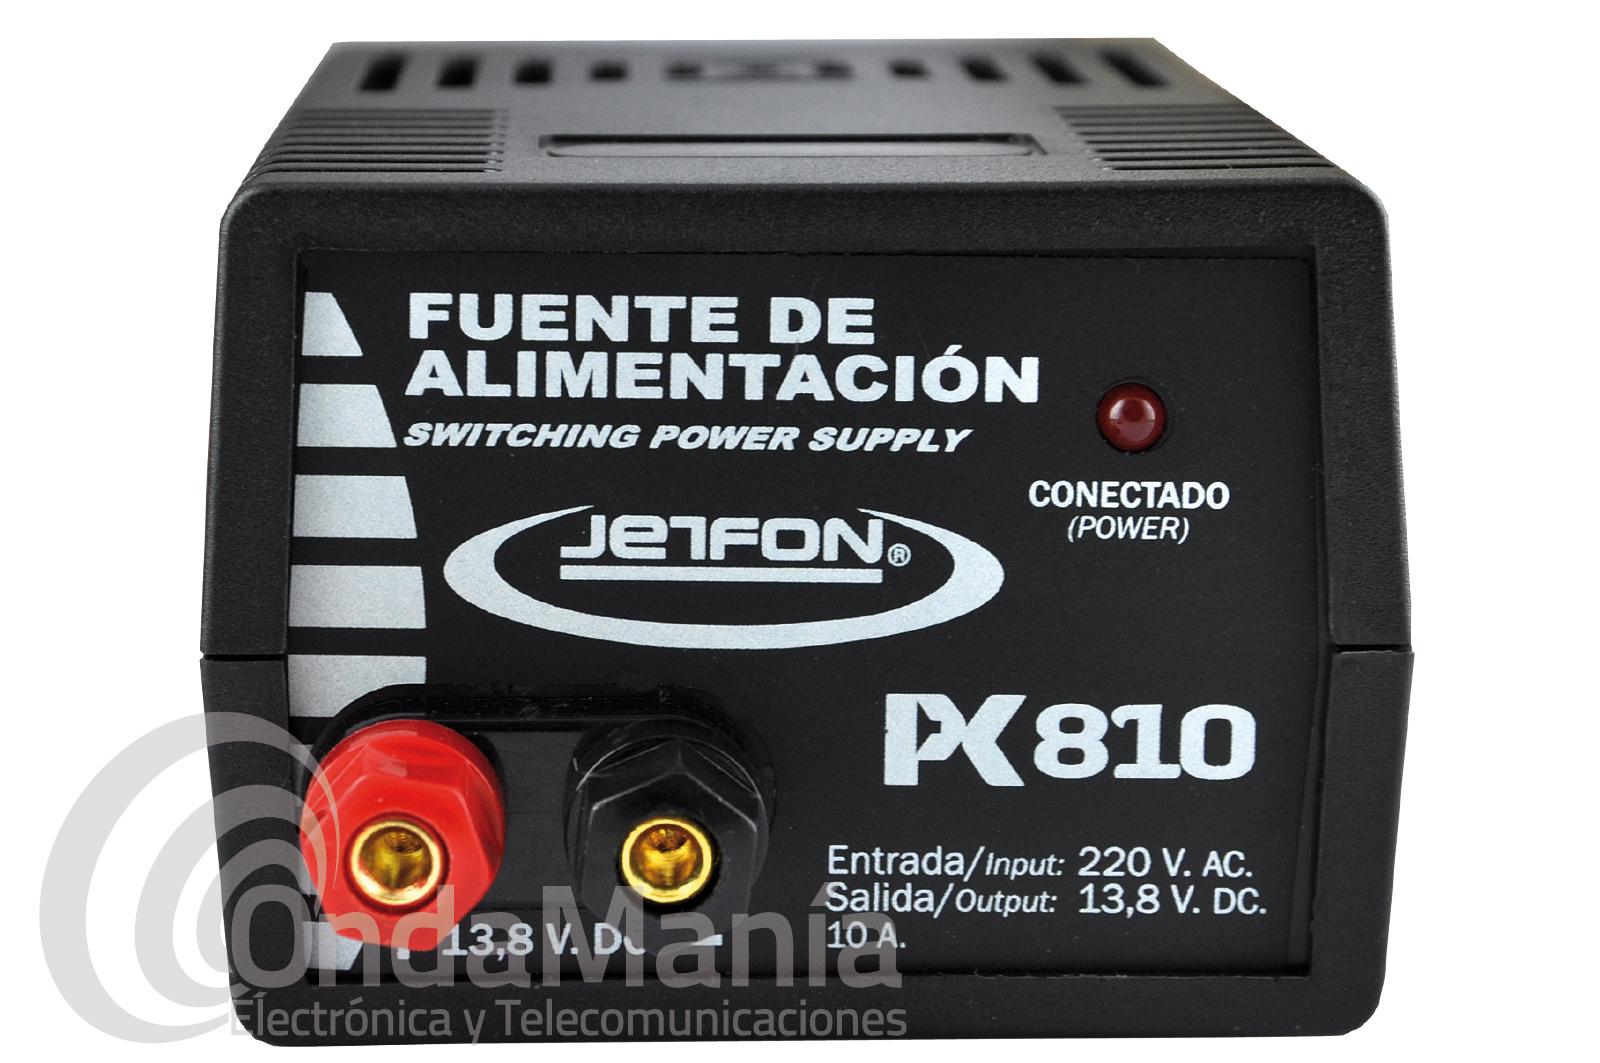 JETFON PC 810 FUENTE DE ALIMENTACION REGULABLE CON UNA INTENSIDAD